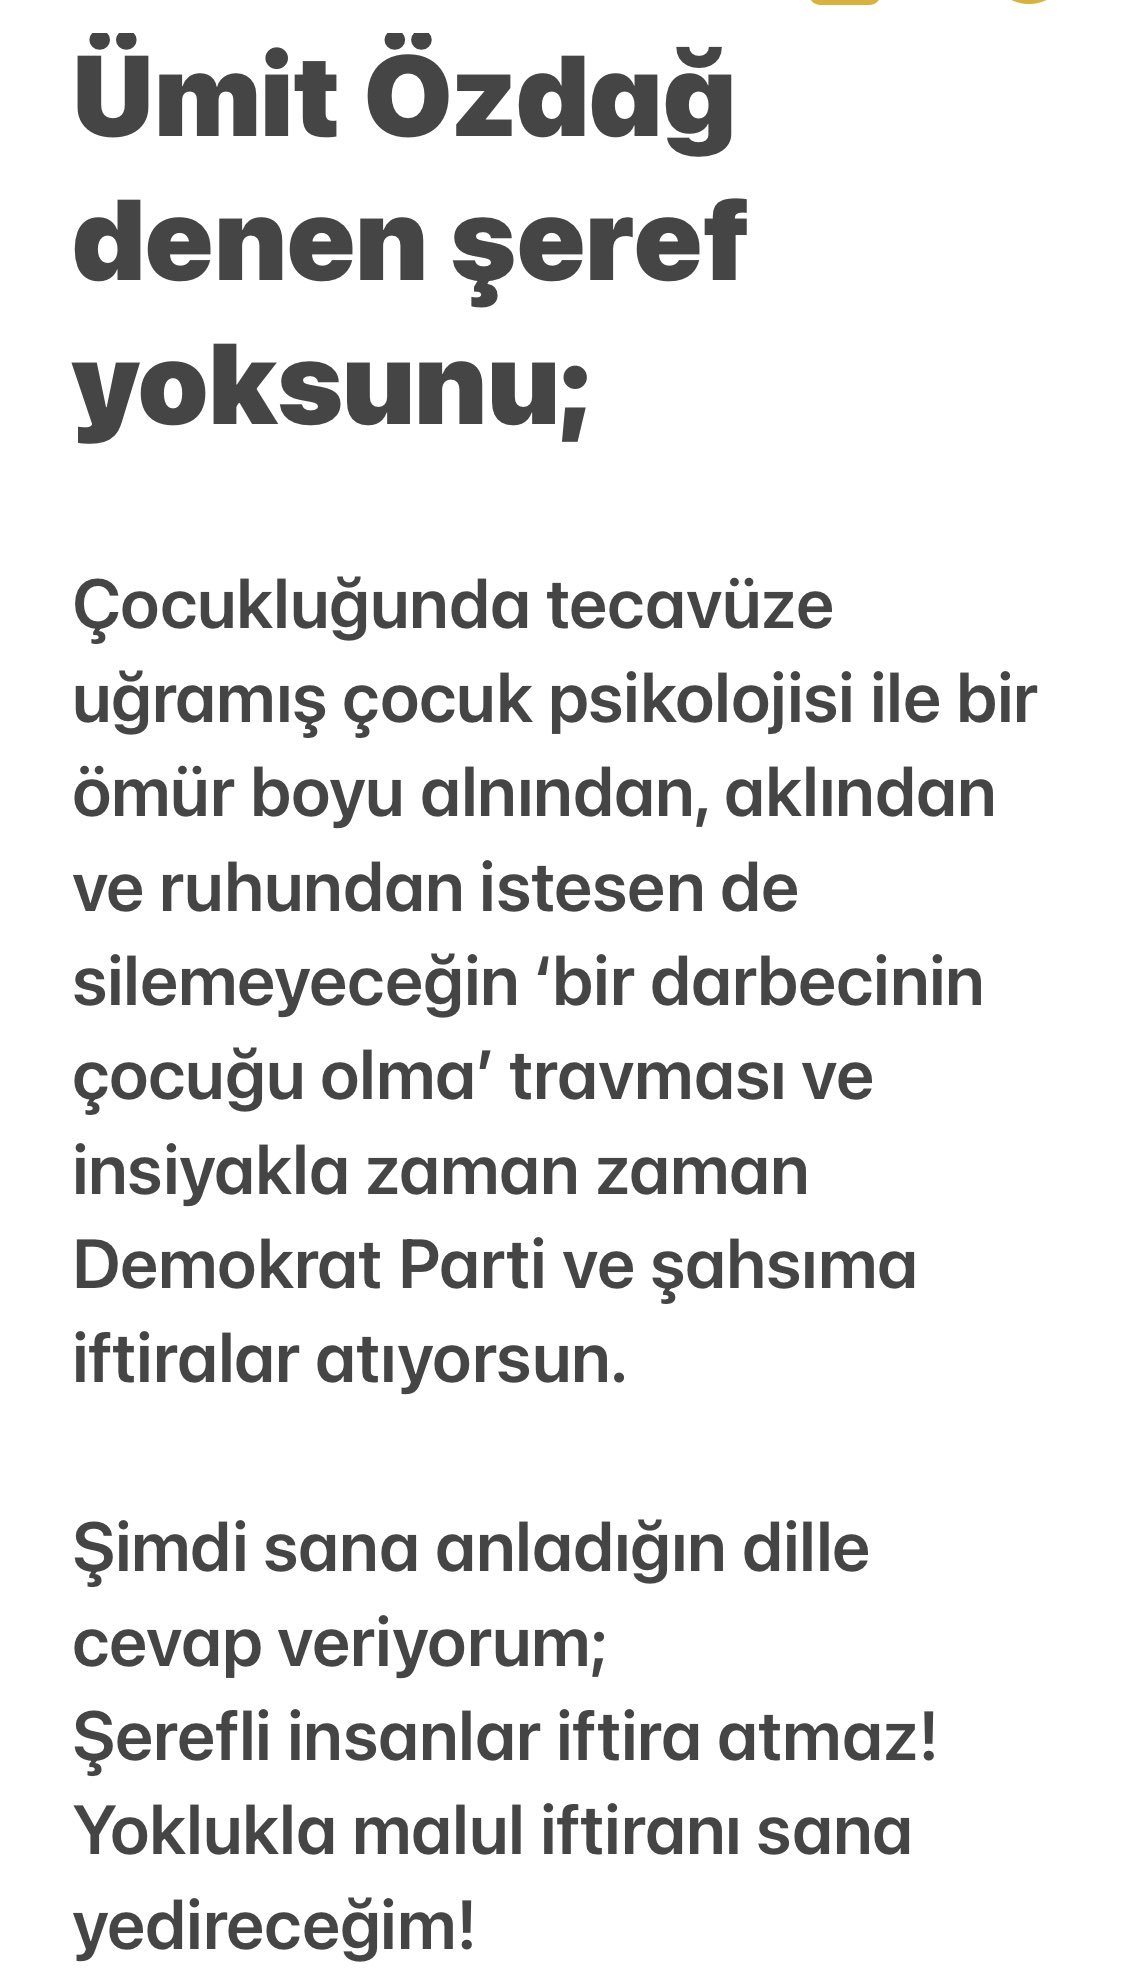 BPT on Twitter: "Ümit Özdağ'dan, Gültekin Uysal'a: "Demokrat Parti Genel  Başkanı Gültekin Uysal'ı tanımak için bu twiti okuyun."  https://t.co/nBmVGwLI6F" / Twitter